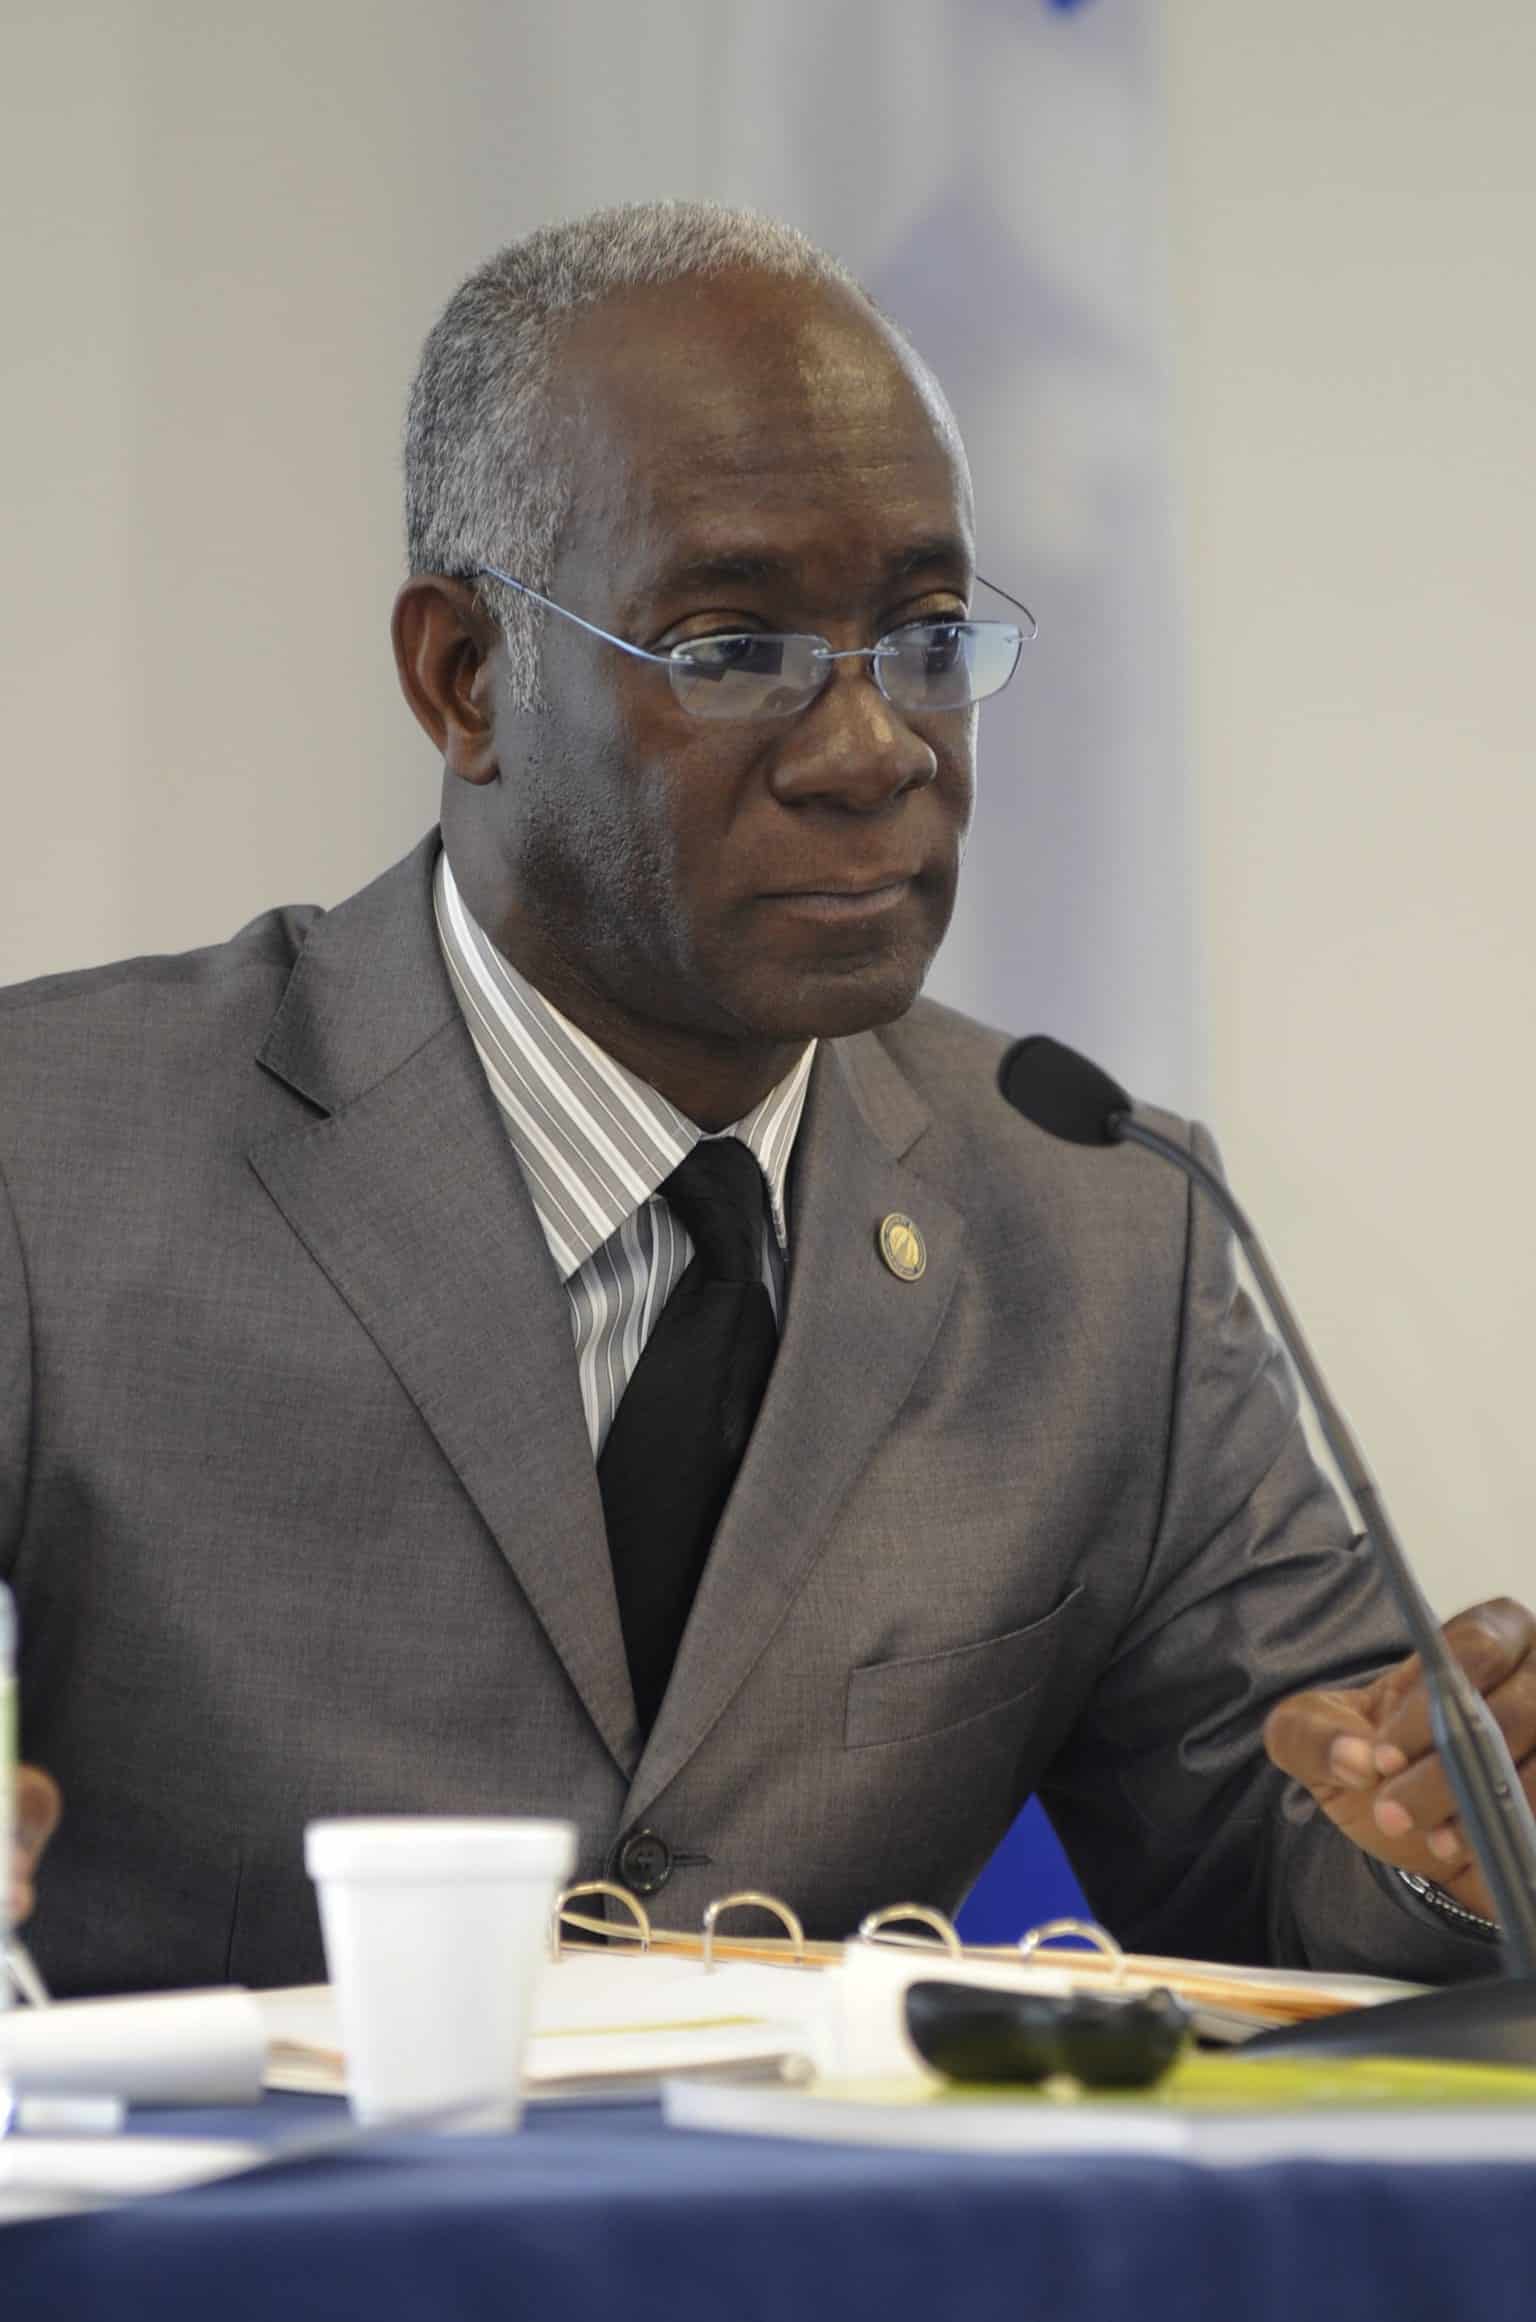 Envían a MP (Ministro del Parlamento) de origen haitiano a Miami para buscar soluciones en crisis de refugiados